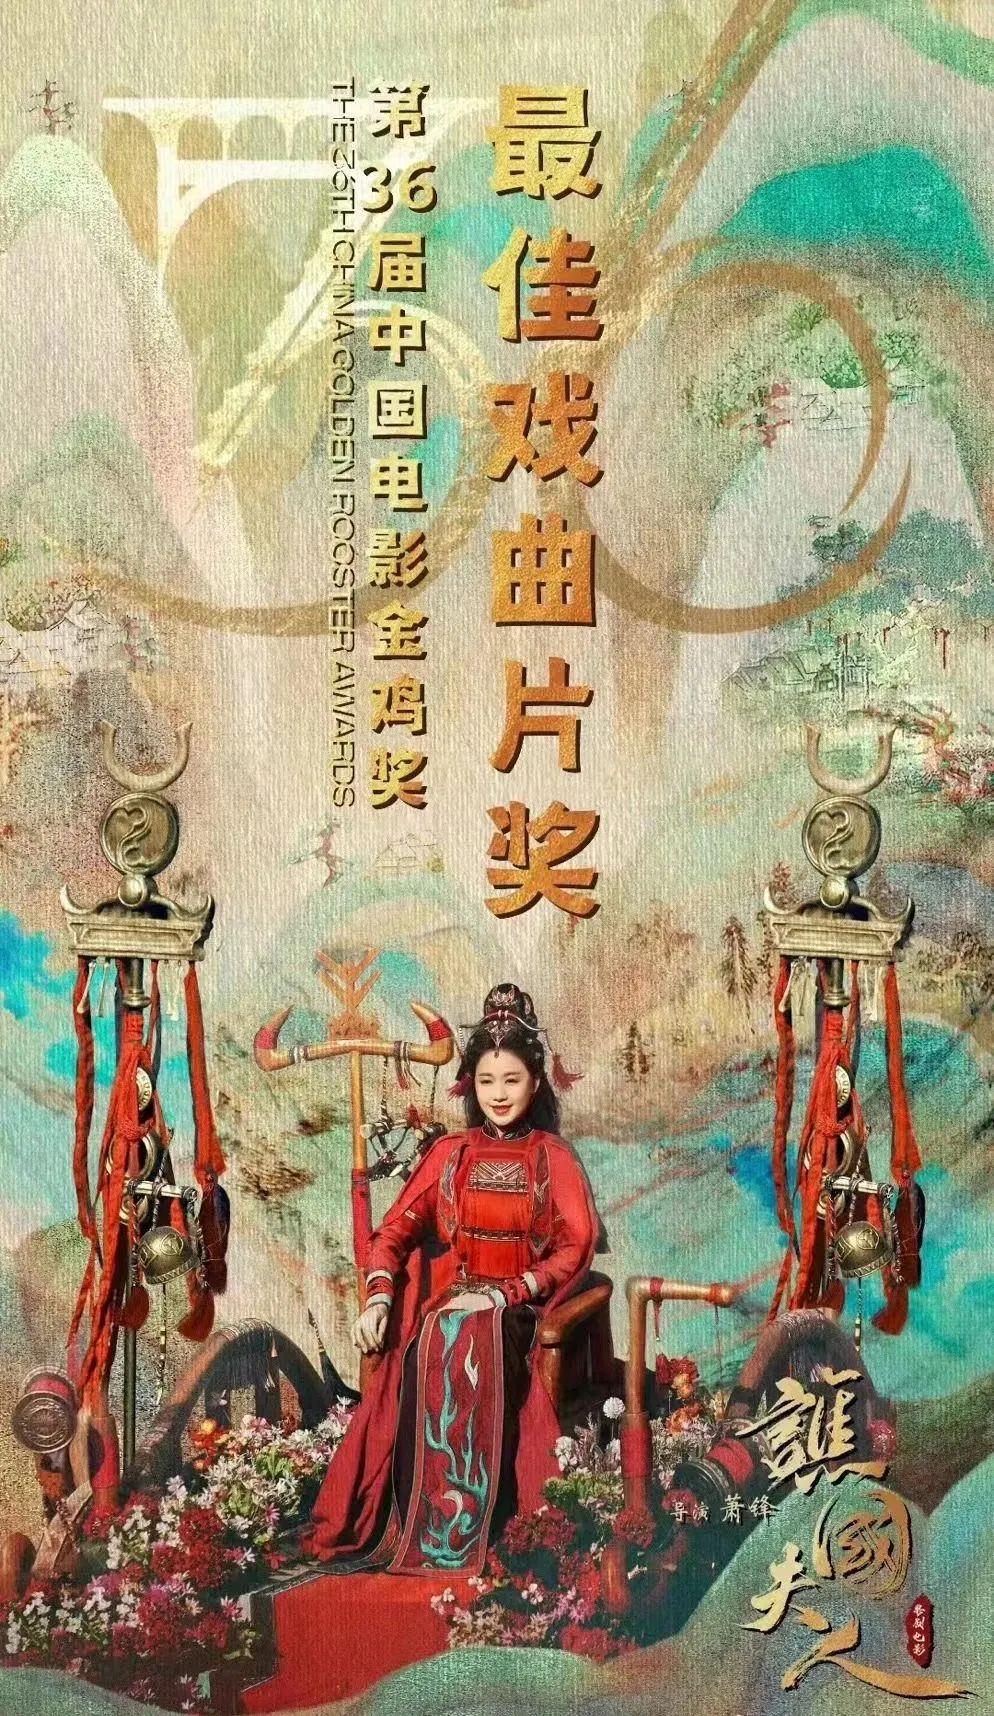 在象山影视城拍摄的粤剧电影《谯国夫人》喜抱“金鸡”